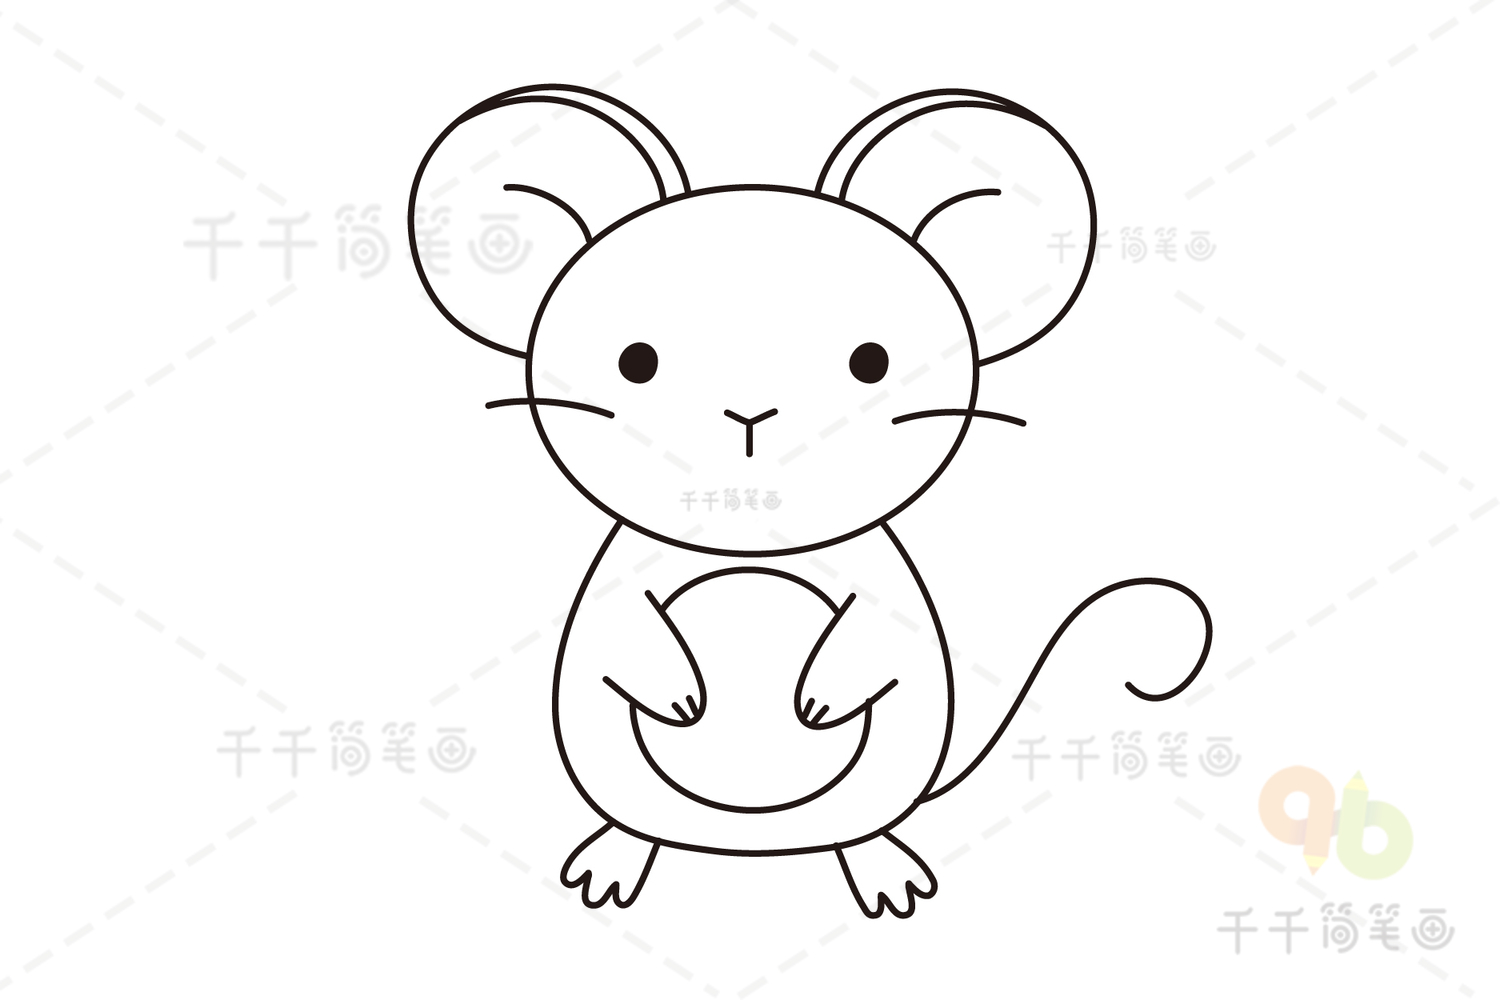 可爱的老鼠简笔画步骤图解